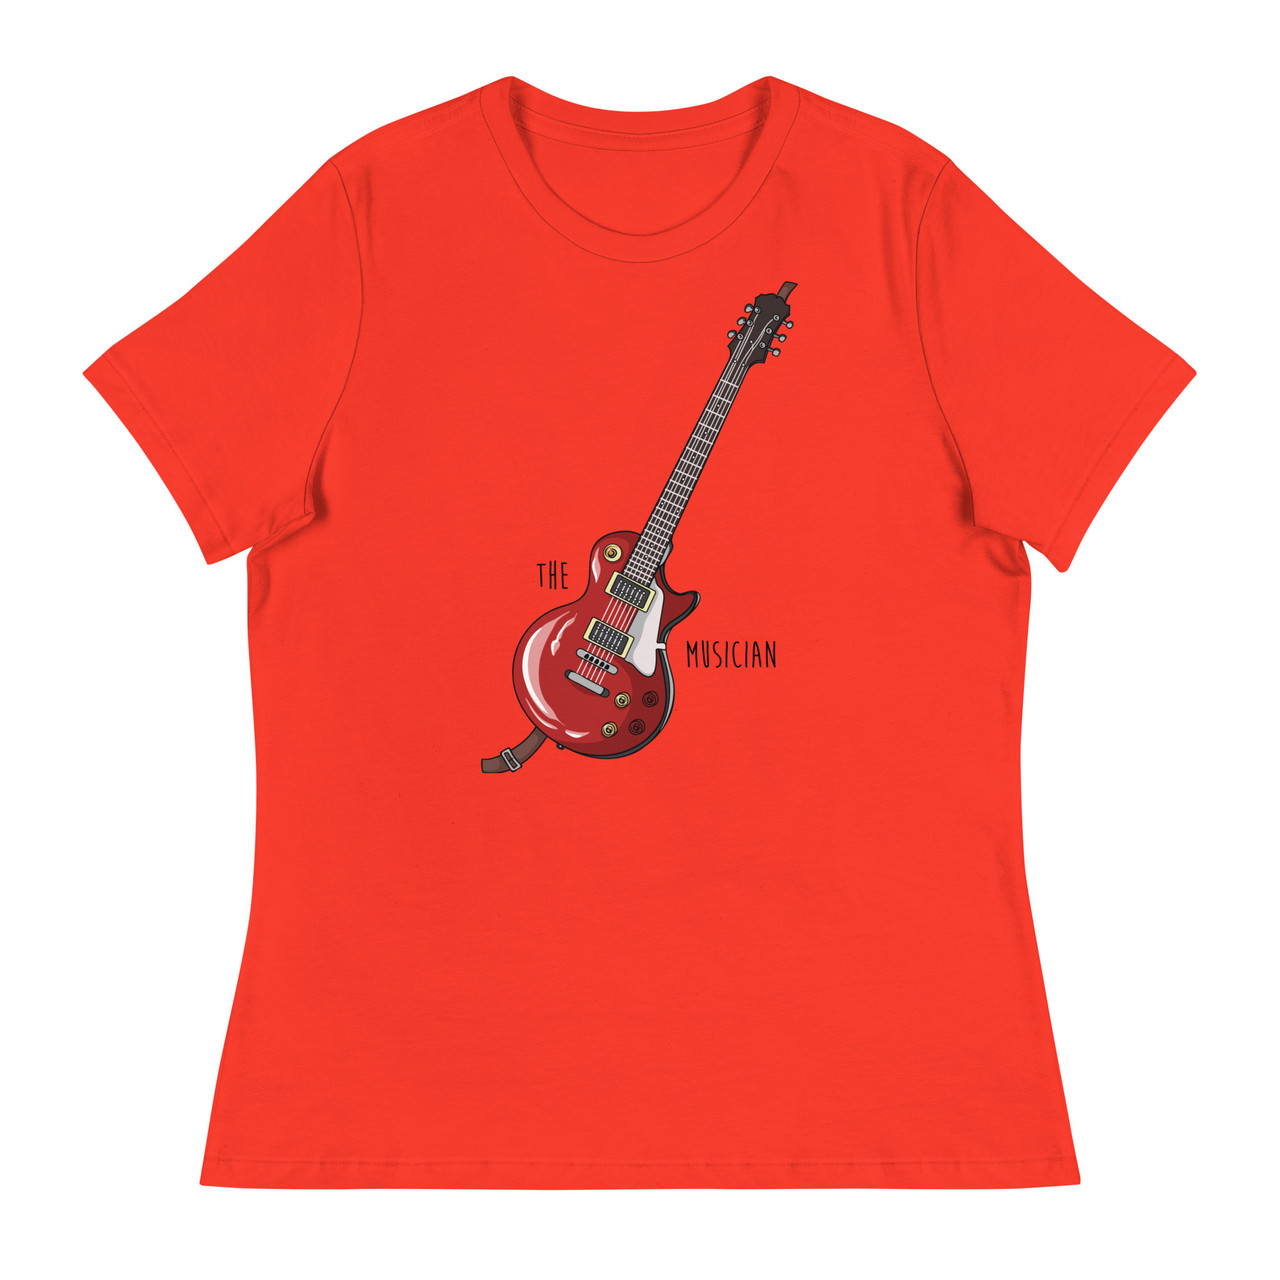 The Musician Women's Relaxed T-Shirt - Bella + Canvas 6400 